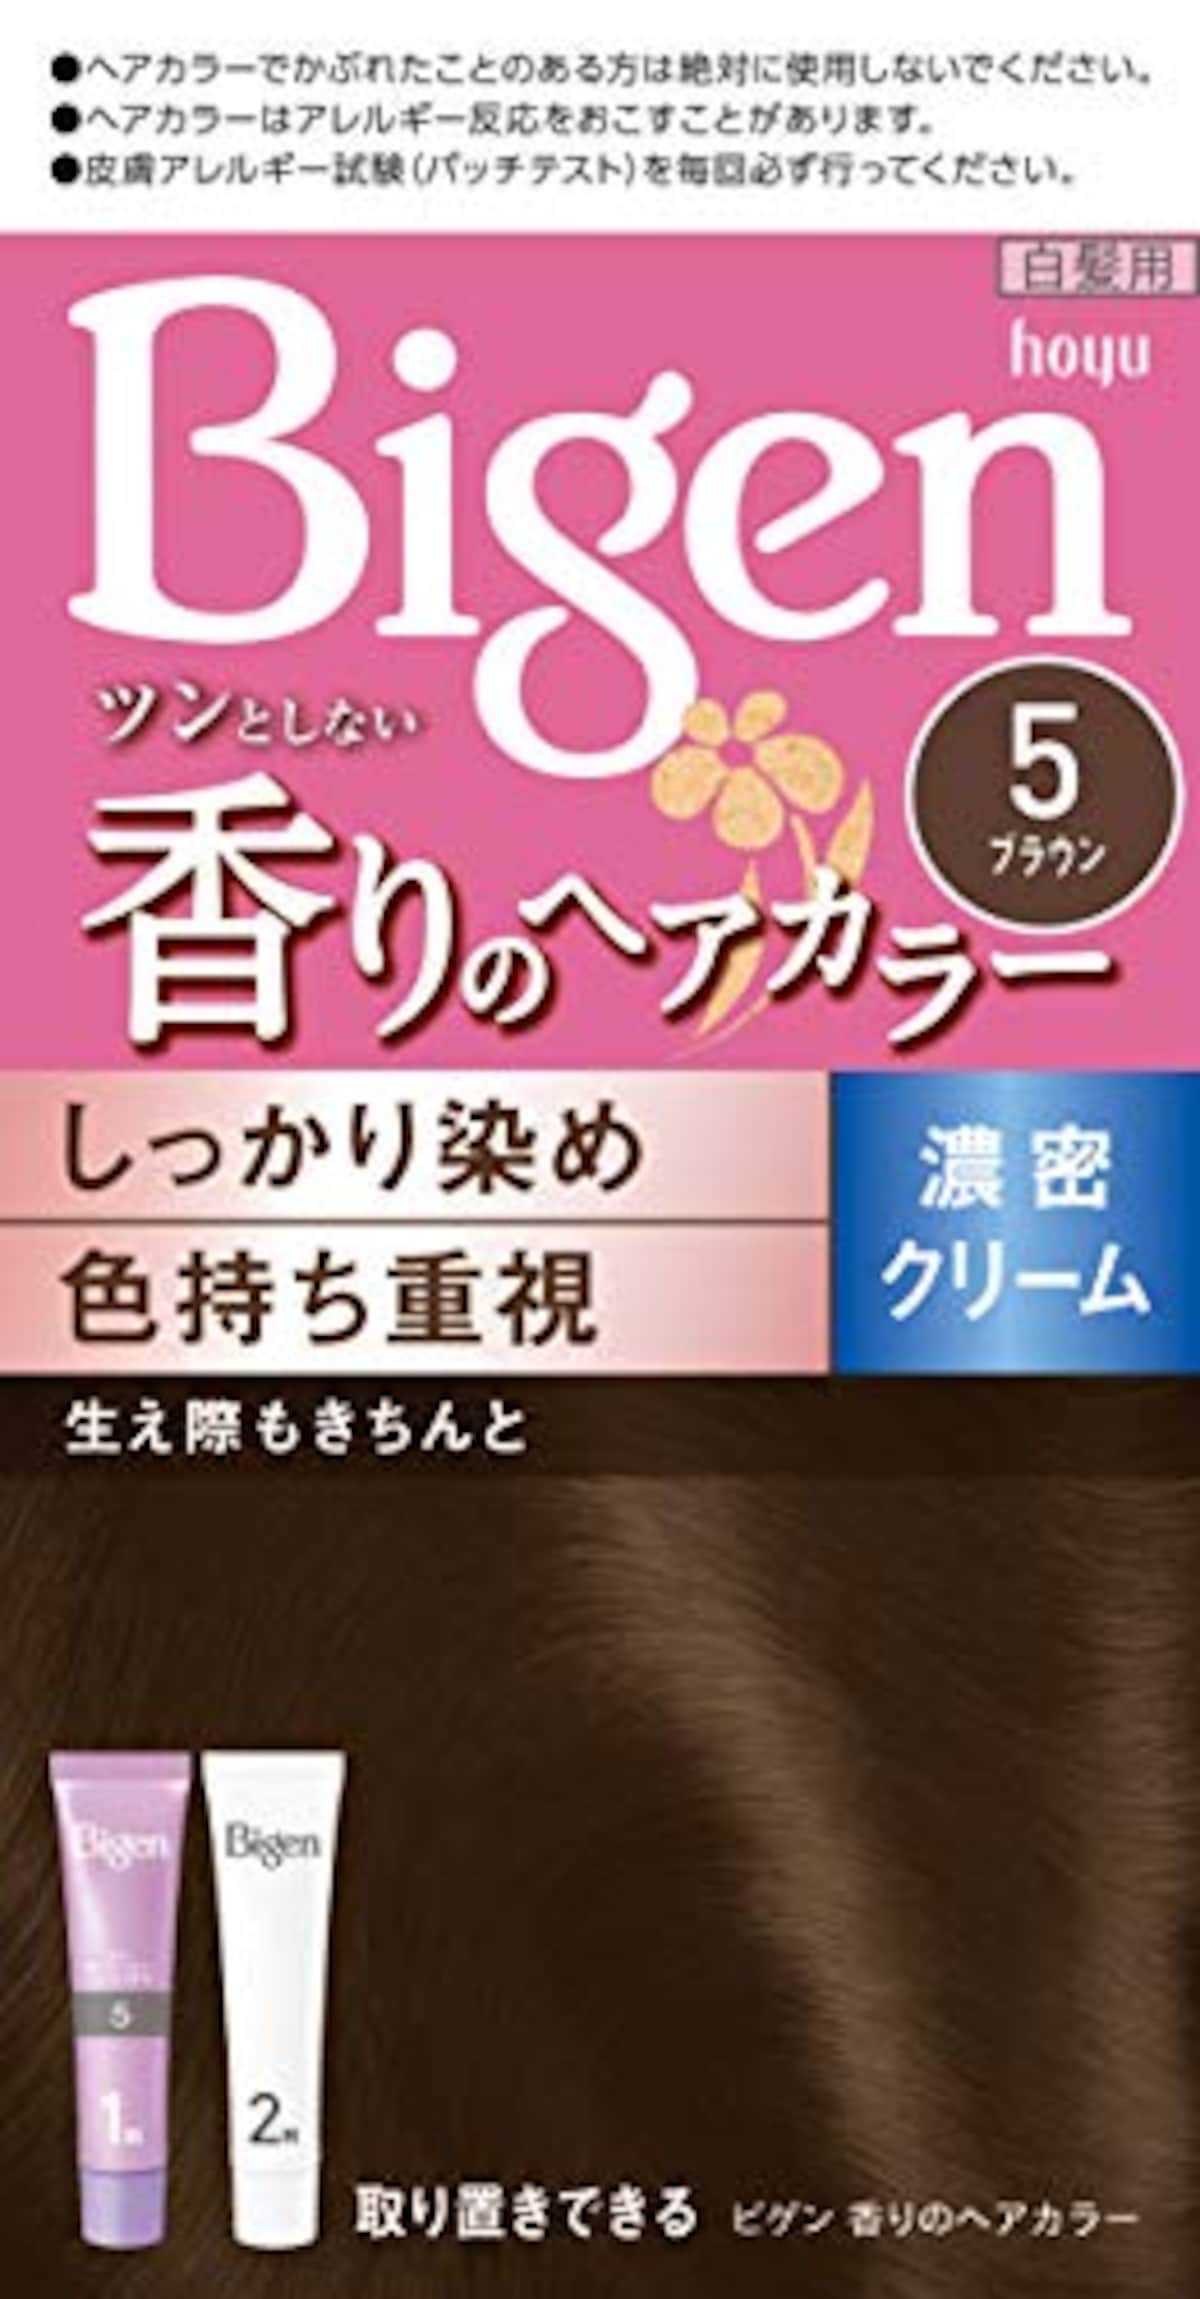 Bigen(ビゲン) 香りのヘアカラークリーム